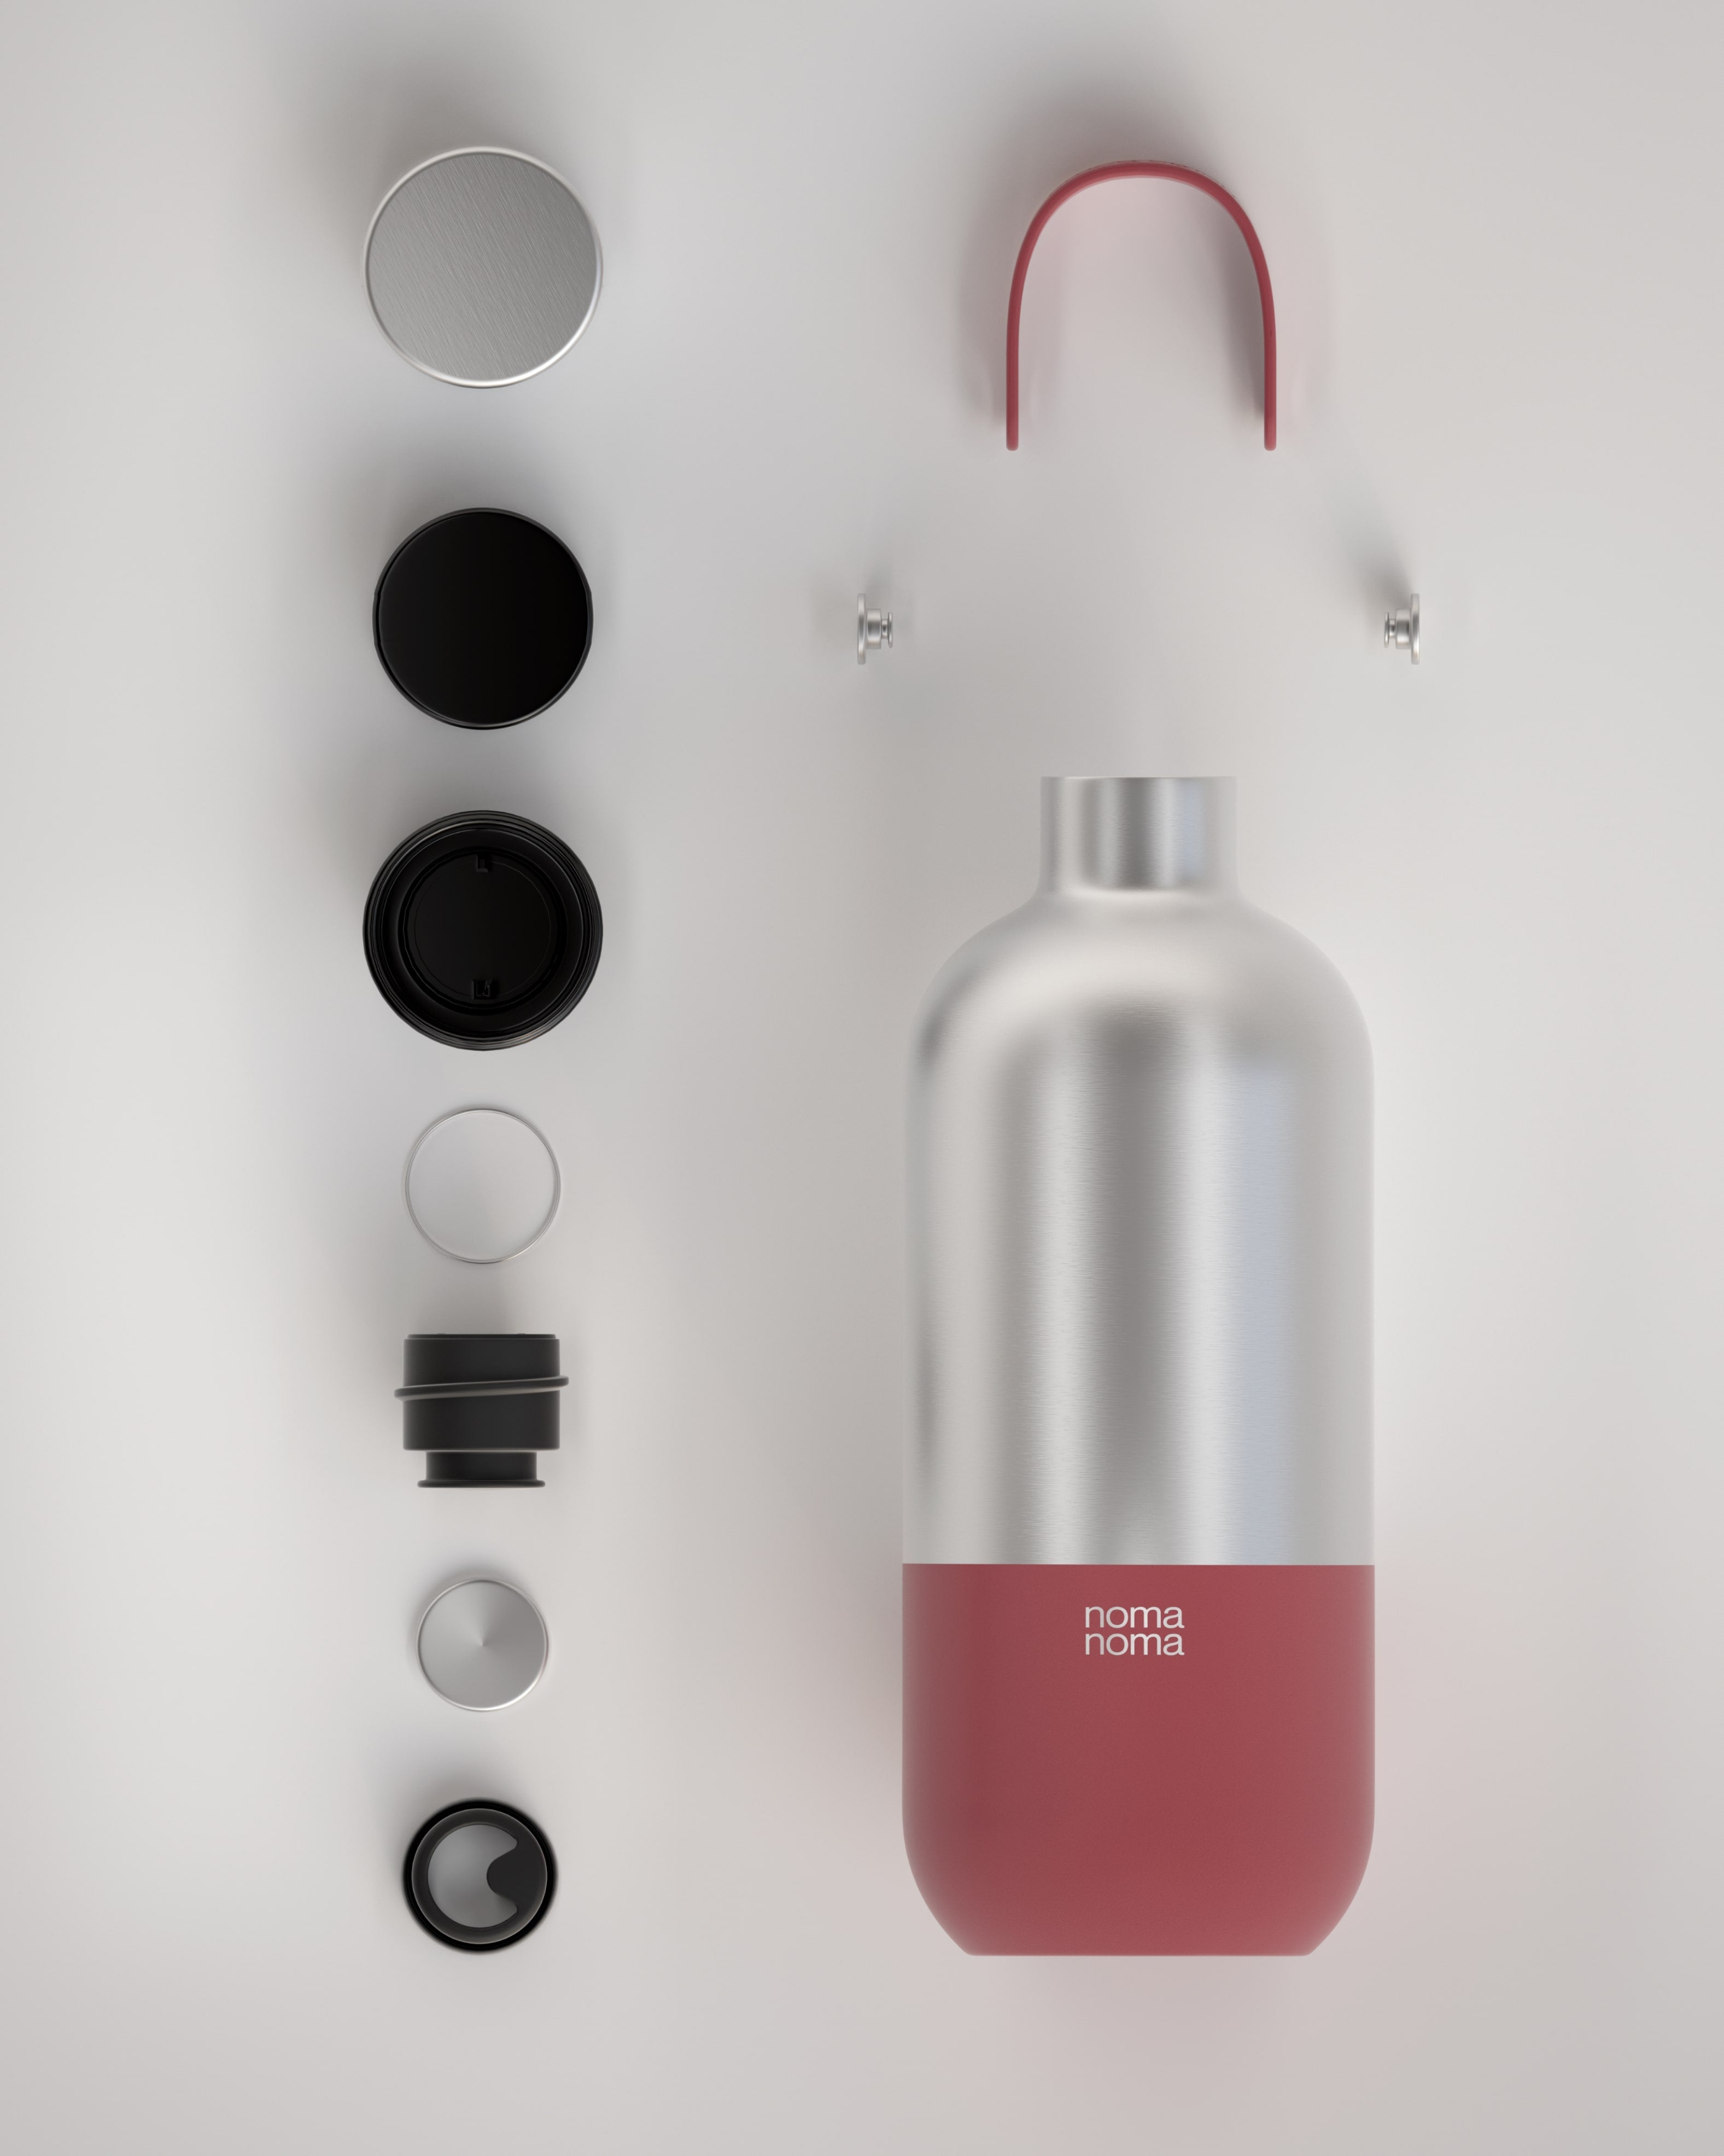 Die noma noma Trinkflasche Edelstahl in rot (1000ml) auf einer Fläche liegend und aufgeteilt in alle Einzelteile